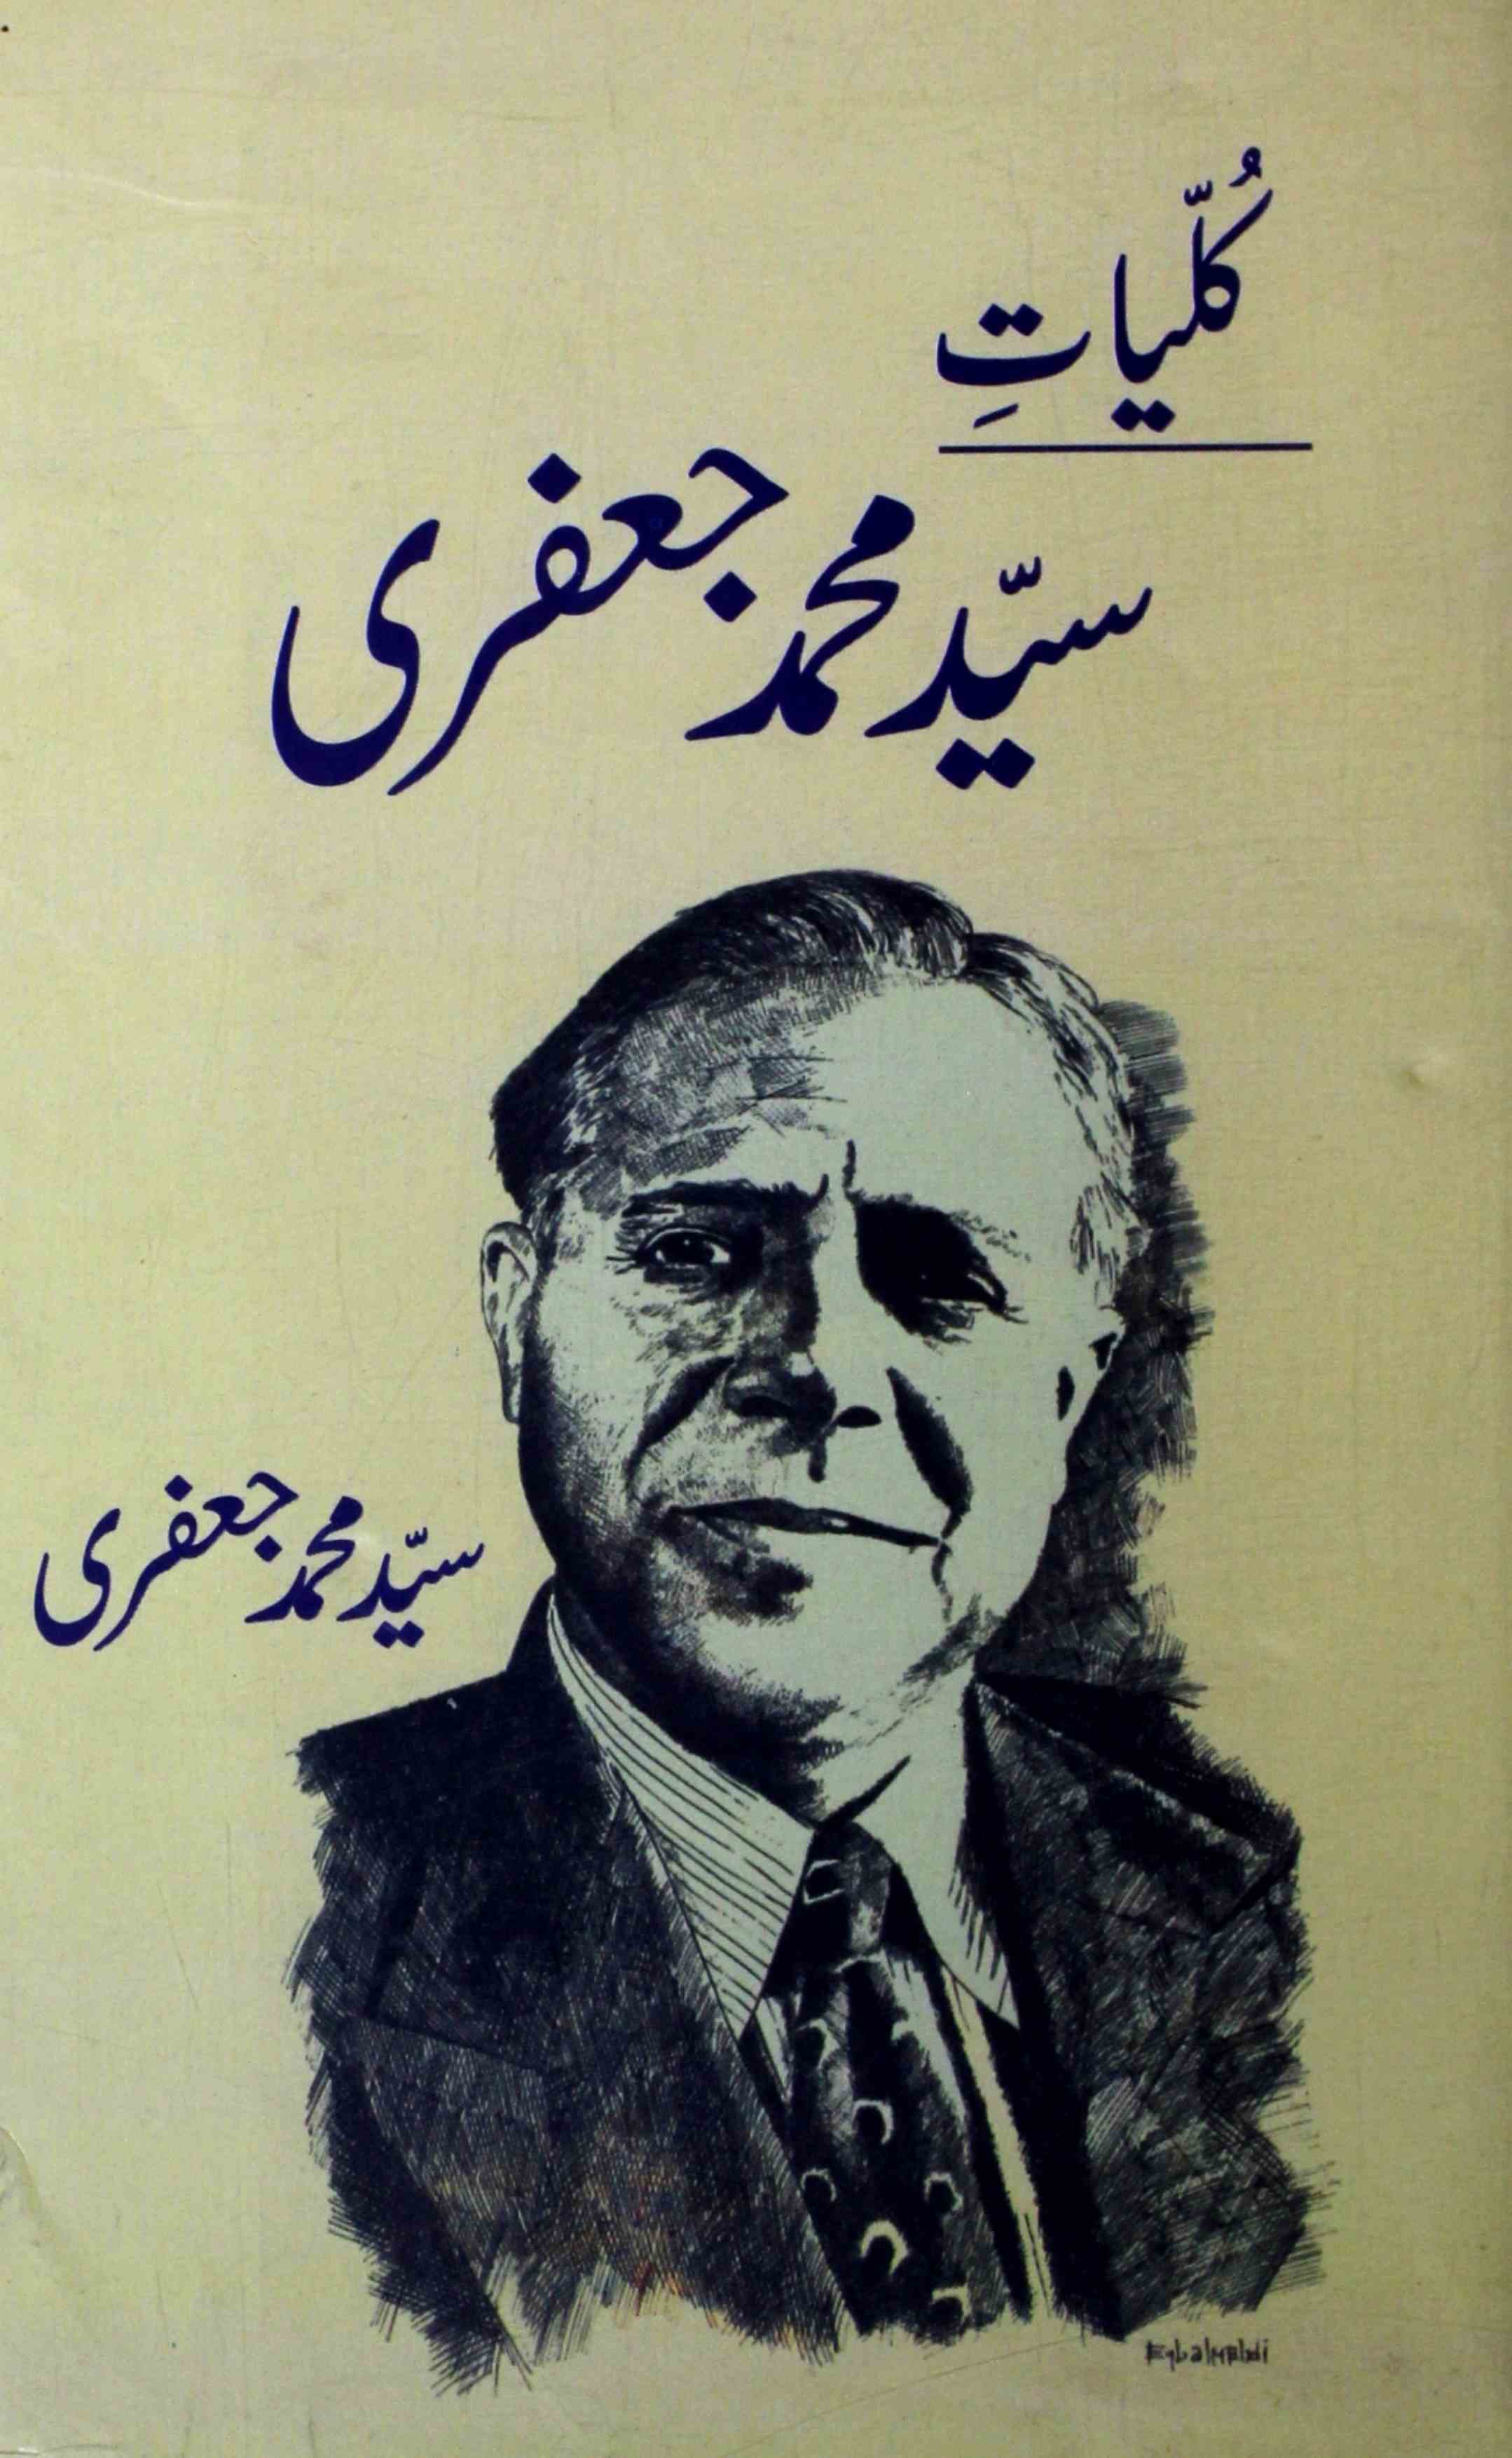 Kulliyat-e-Sayyad Mohammad Jafari